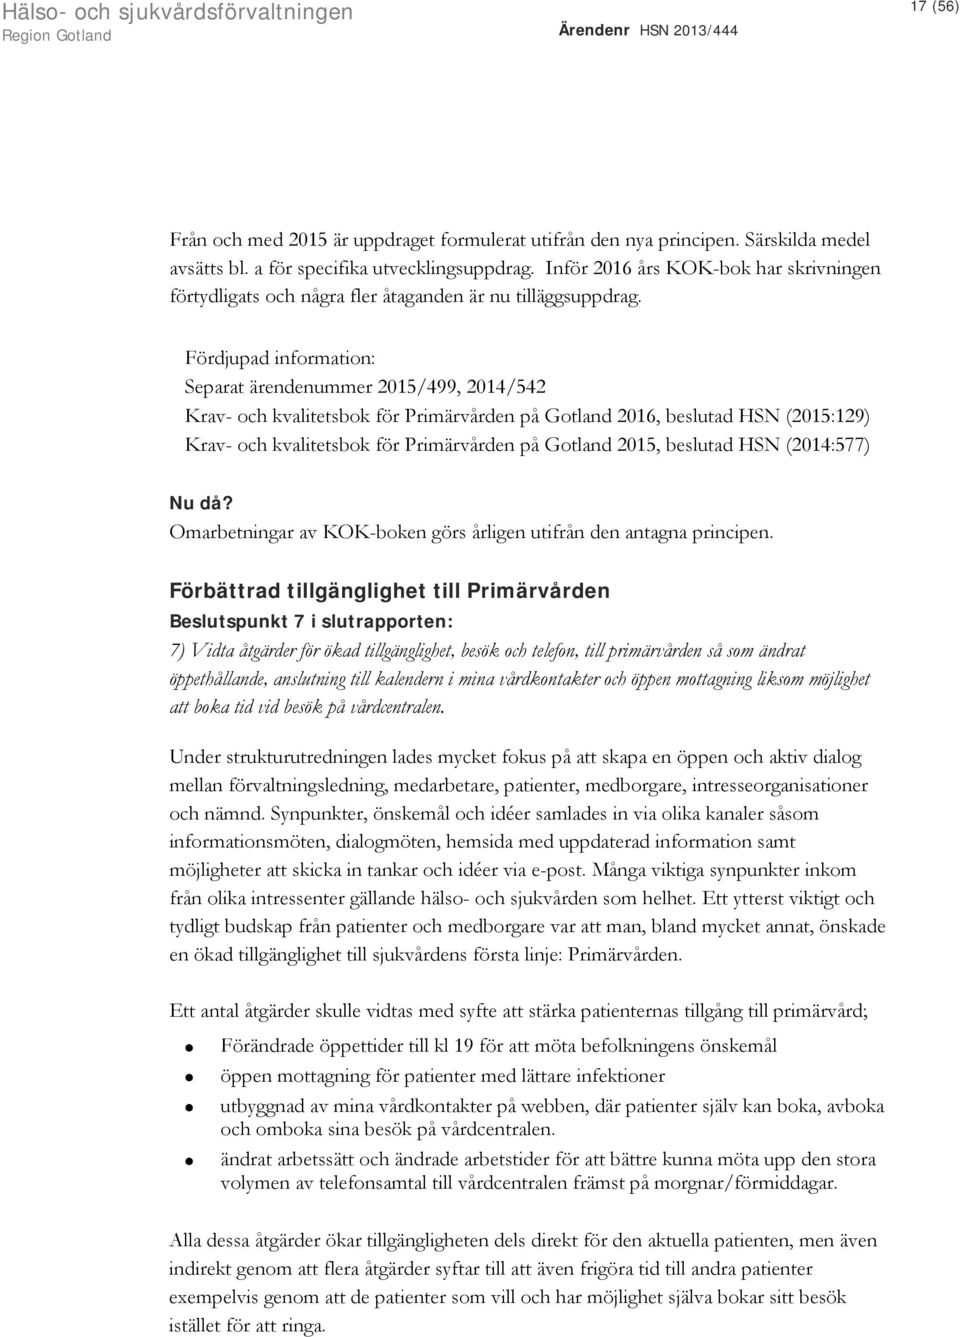 Fördjupad information: Separat ärendenummer 2015/499, 2014/542 Krav- och kvalitetsbok för Primärvården på Gotland 2016, beslutad HSN (2015:129) Krav- och kvalitetsbok för Primärvården på Gotland